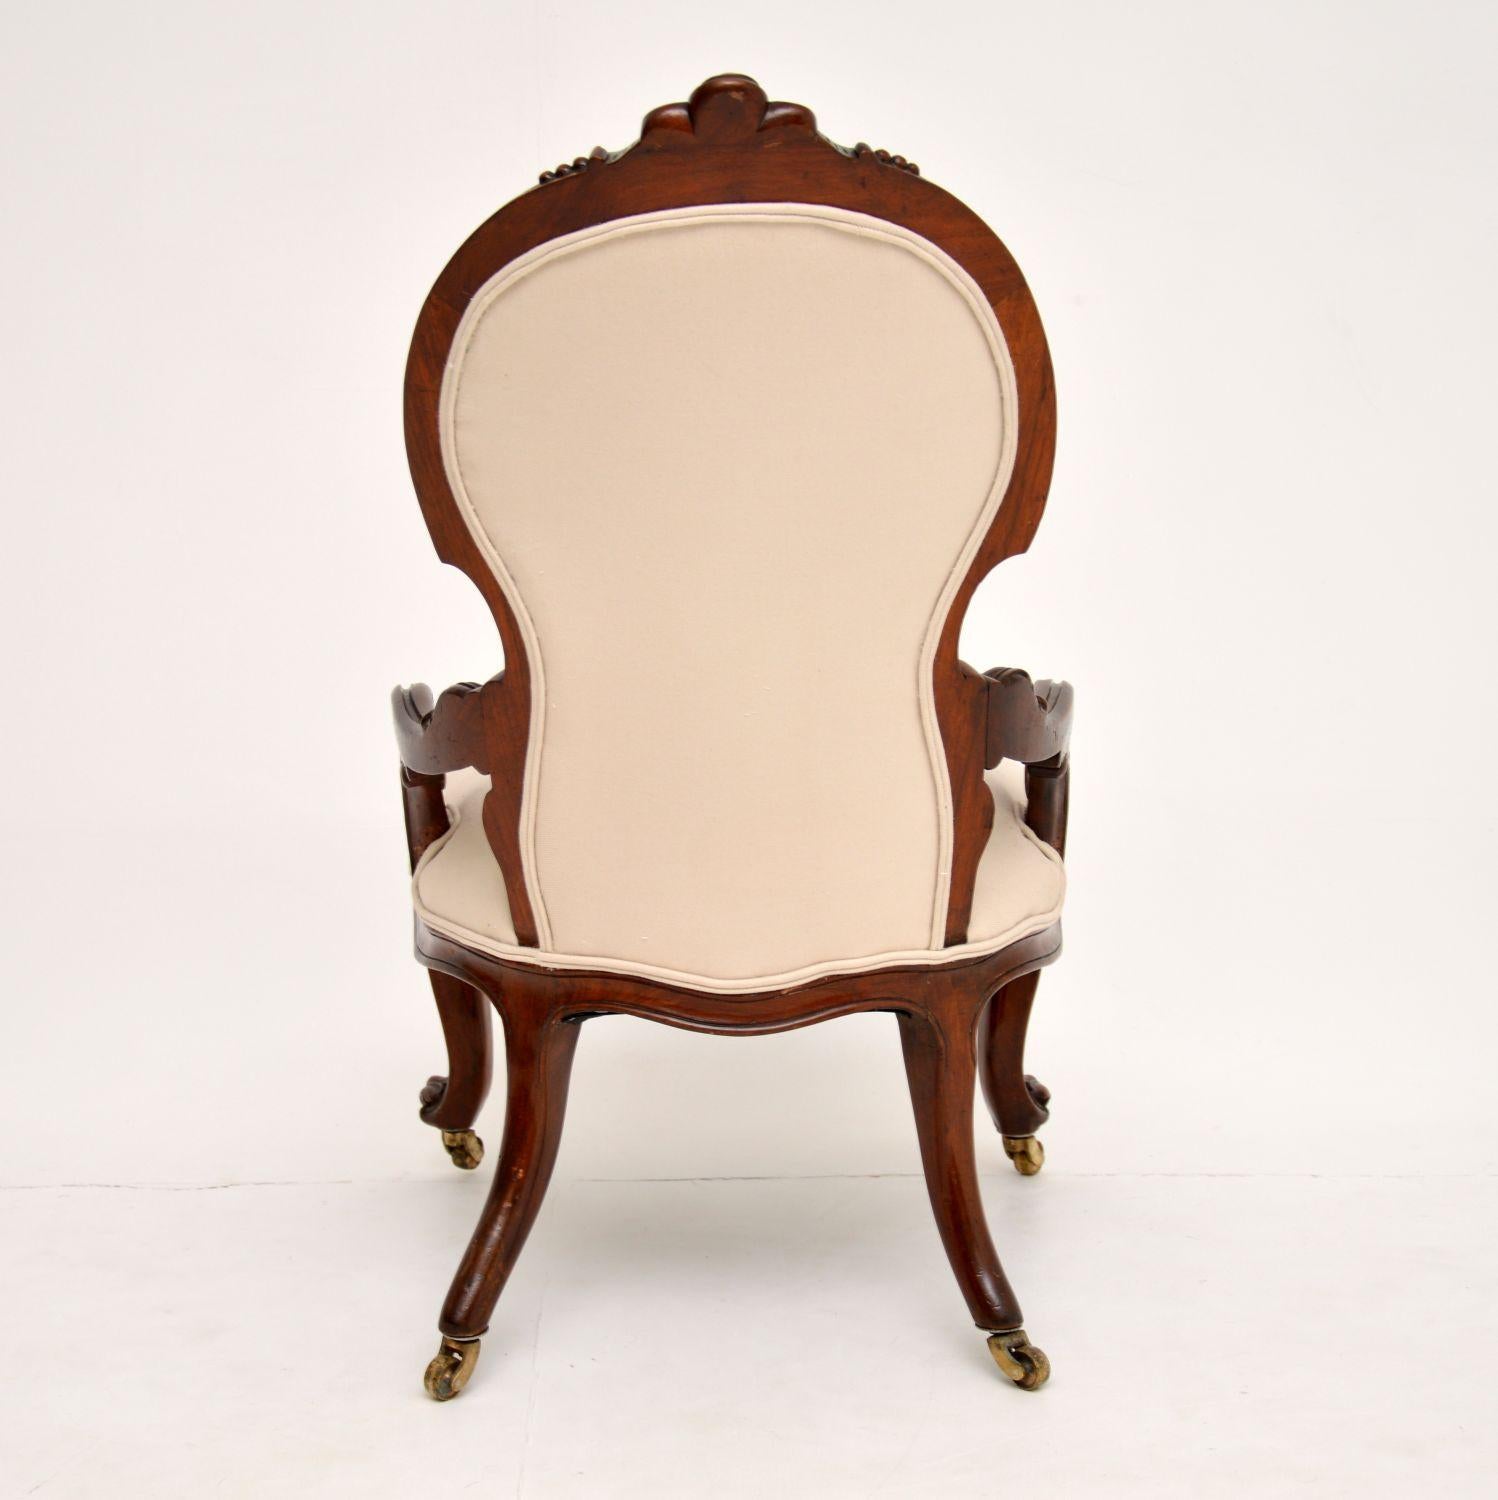 English Antique Victorian Walnut Nursing Chair